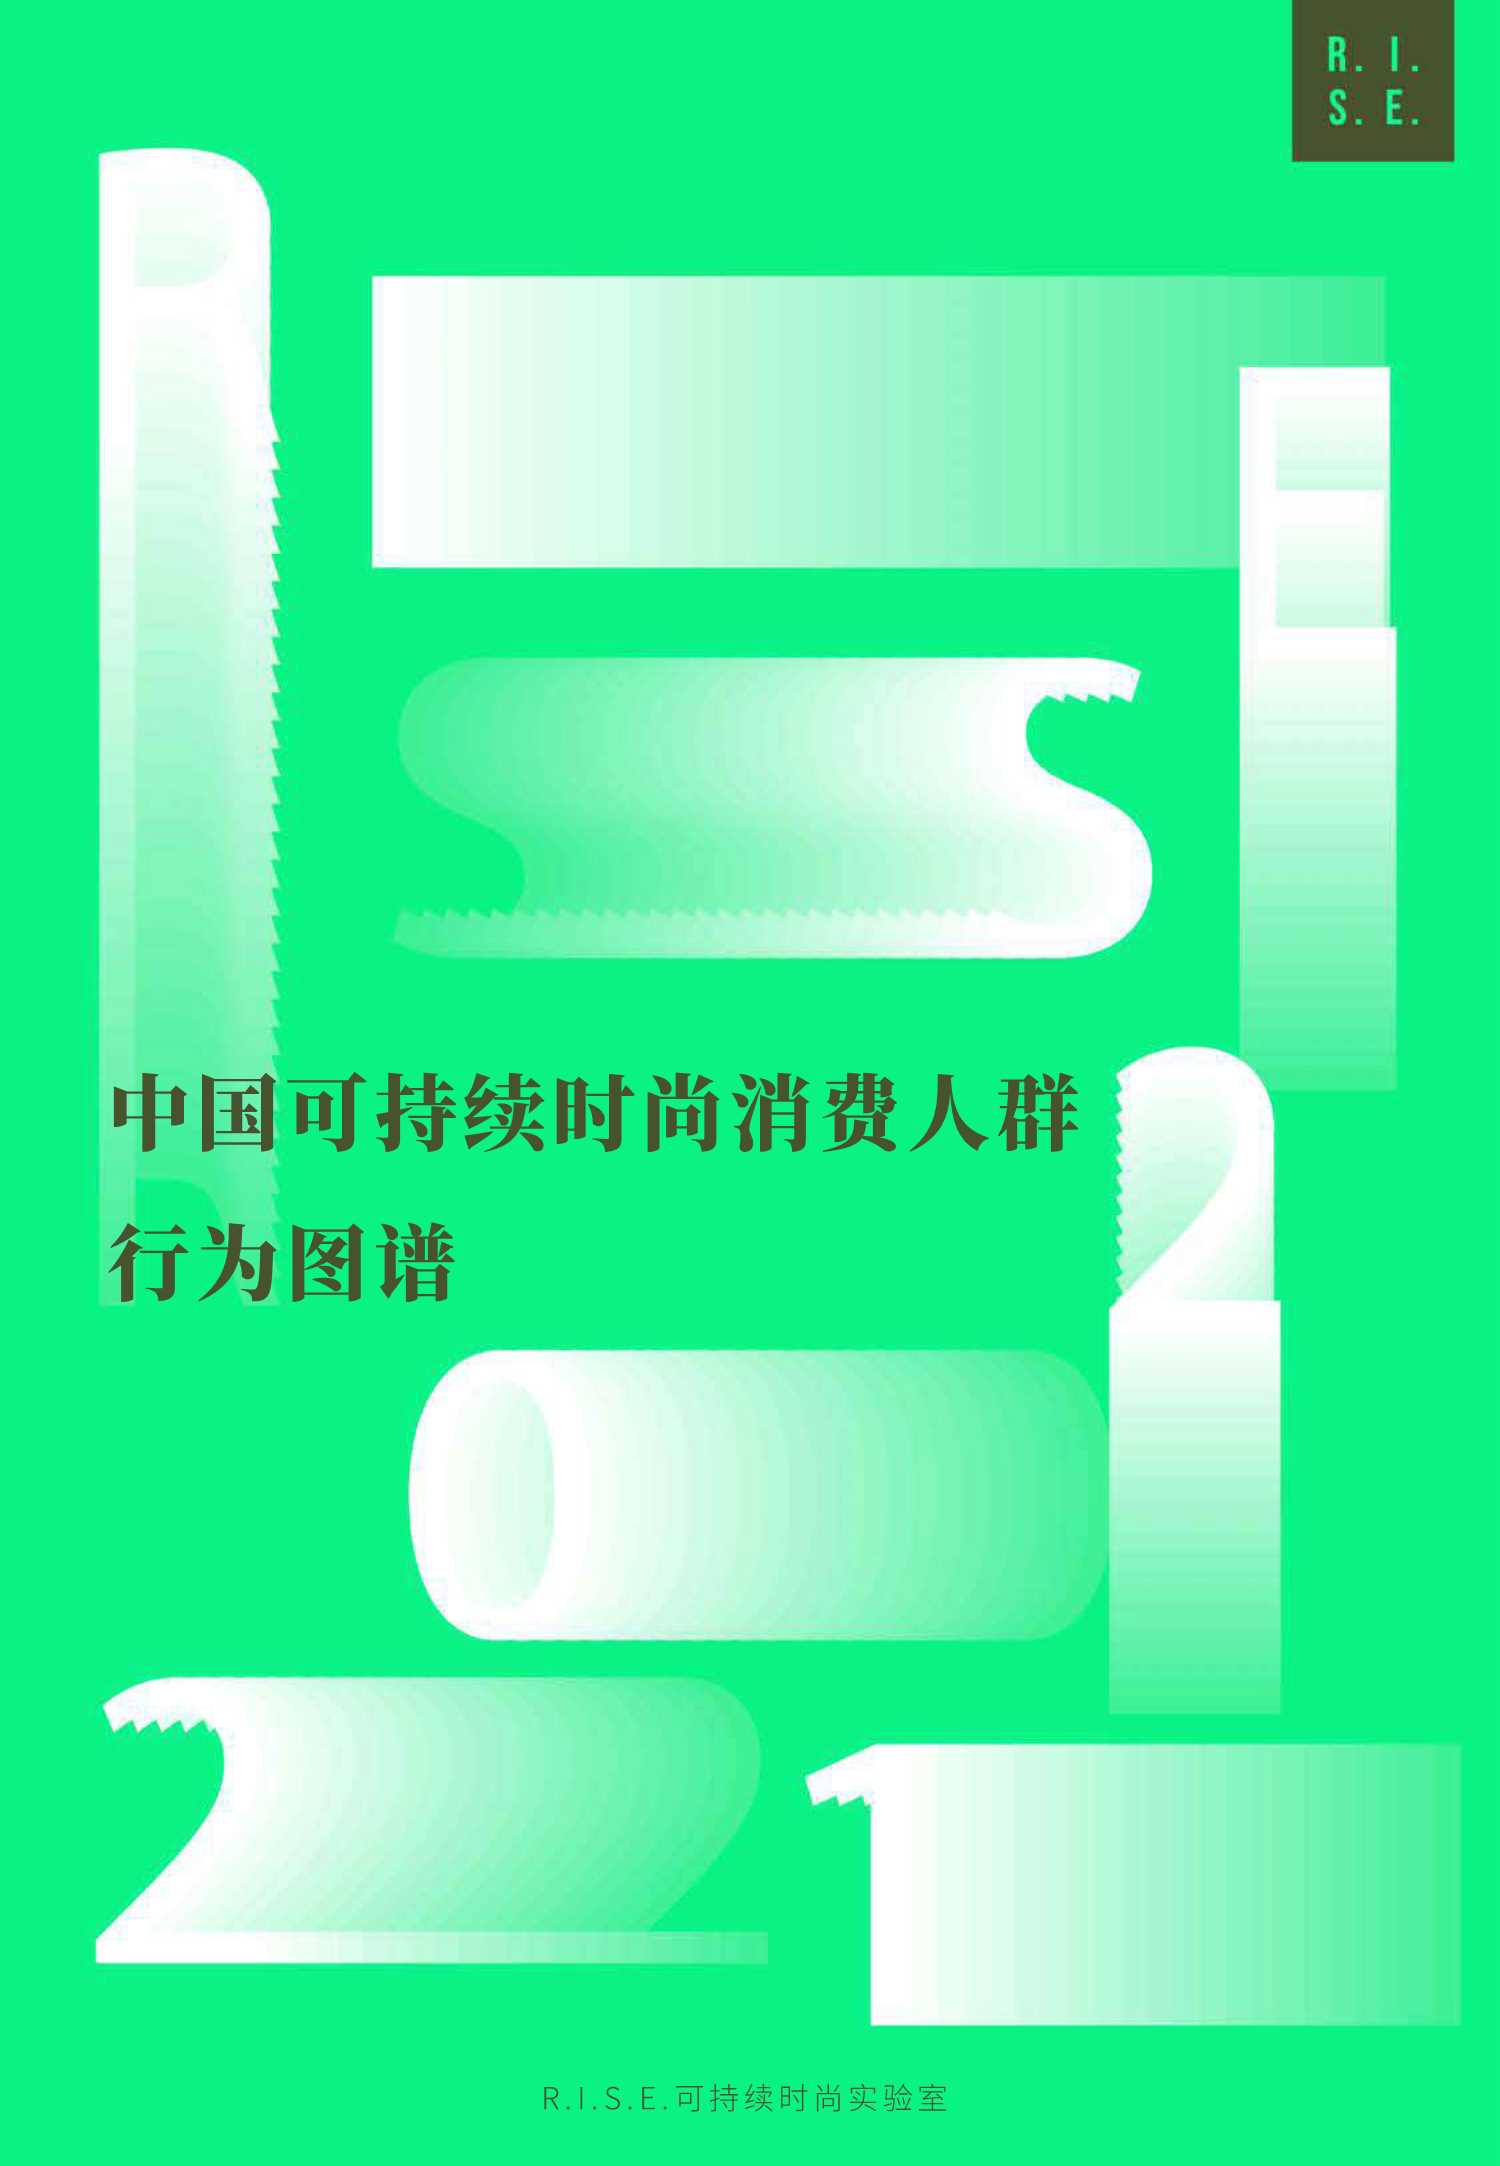 2021年中国可持续时尚消费人群行为图谱（中英文版）-2021.11-70页